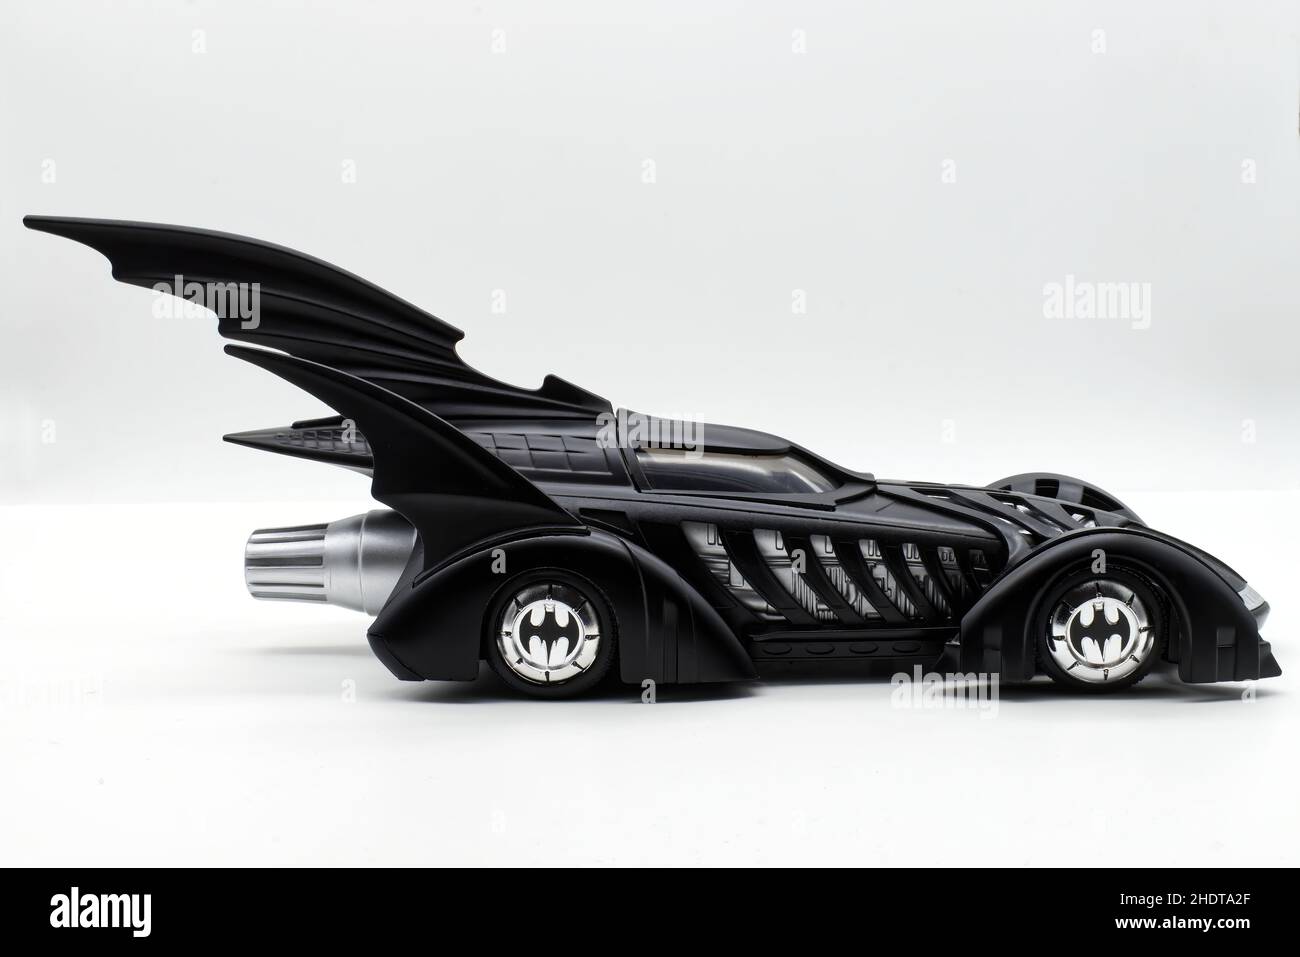 Autocar Performance Show 2014: Batmobile replica showcased